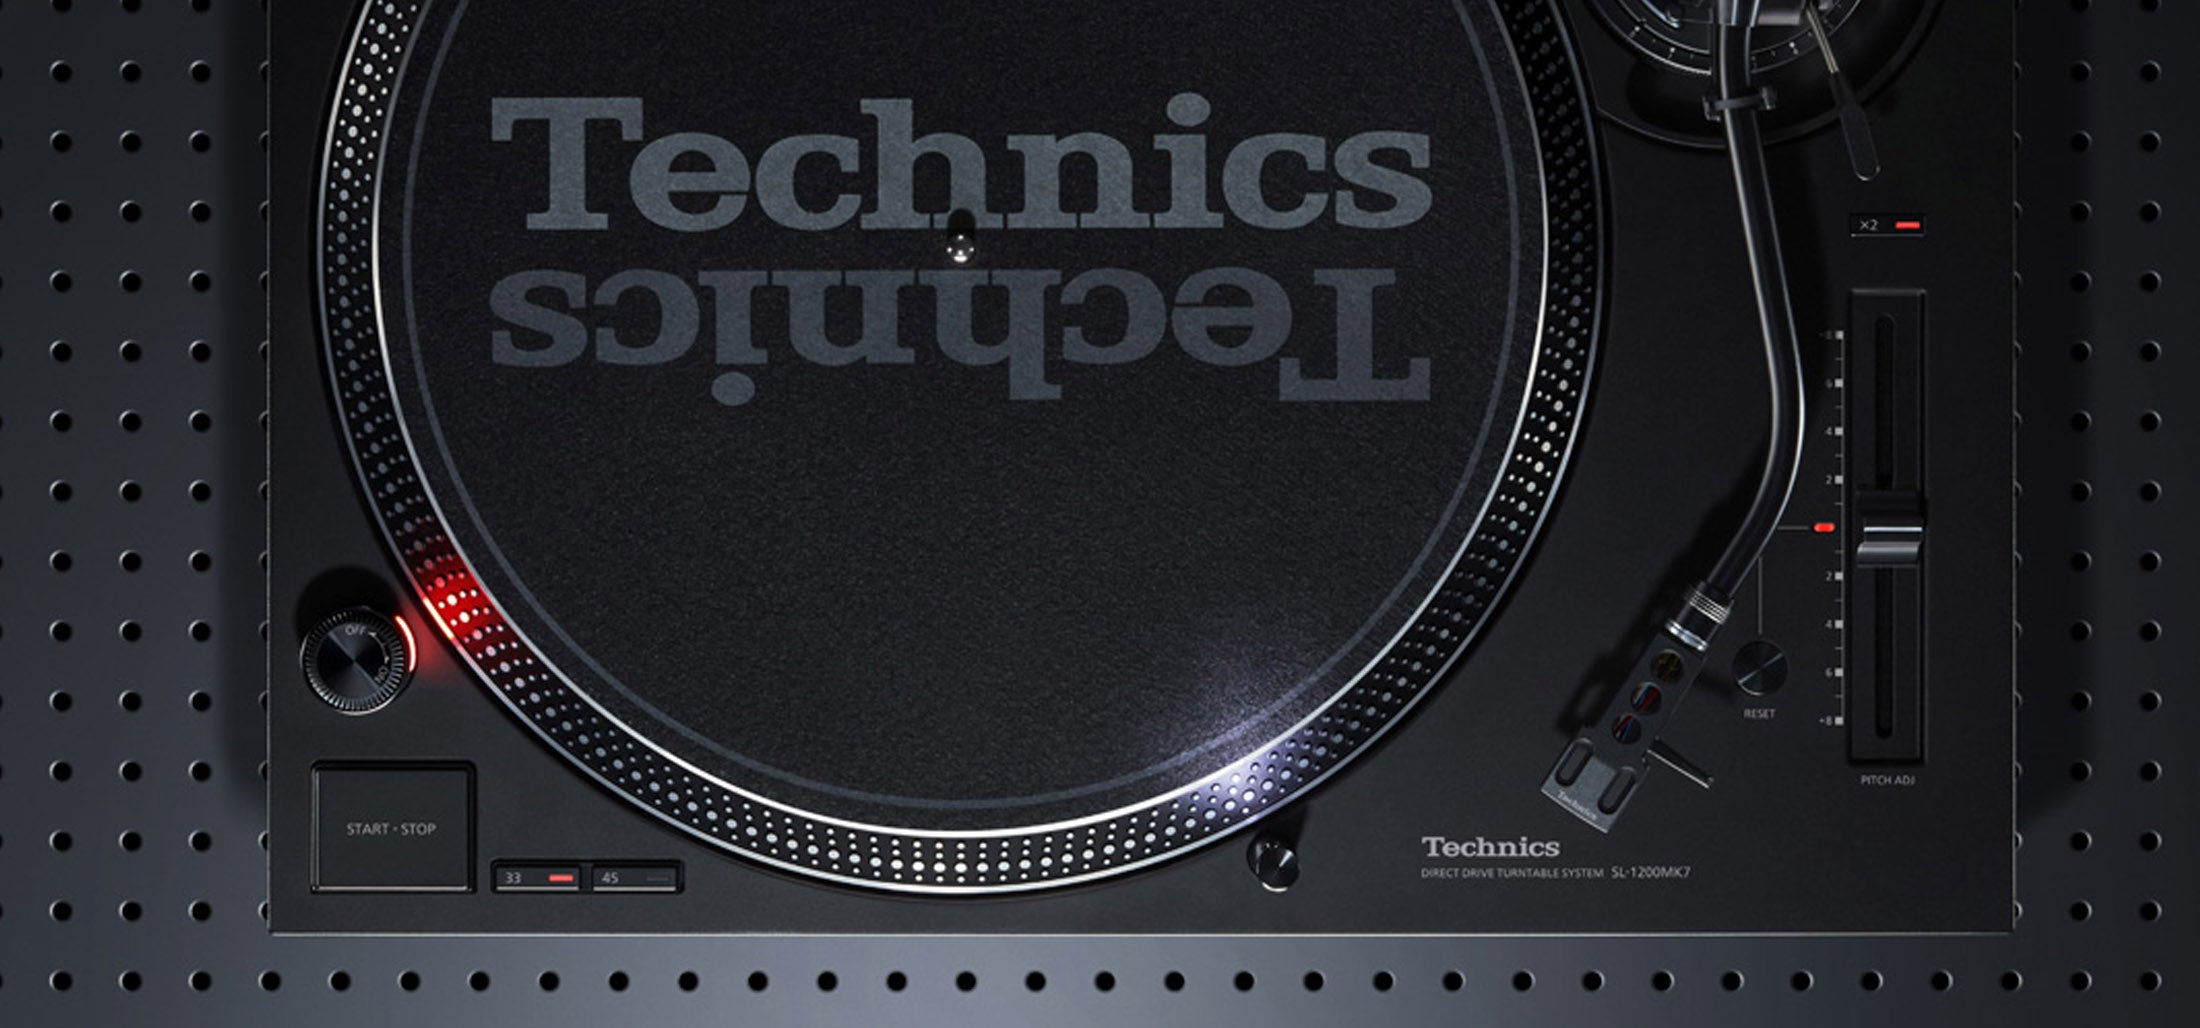 Technics SL-1200MK7: los DJ's y entusiastas del vinilo contentos